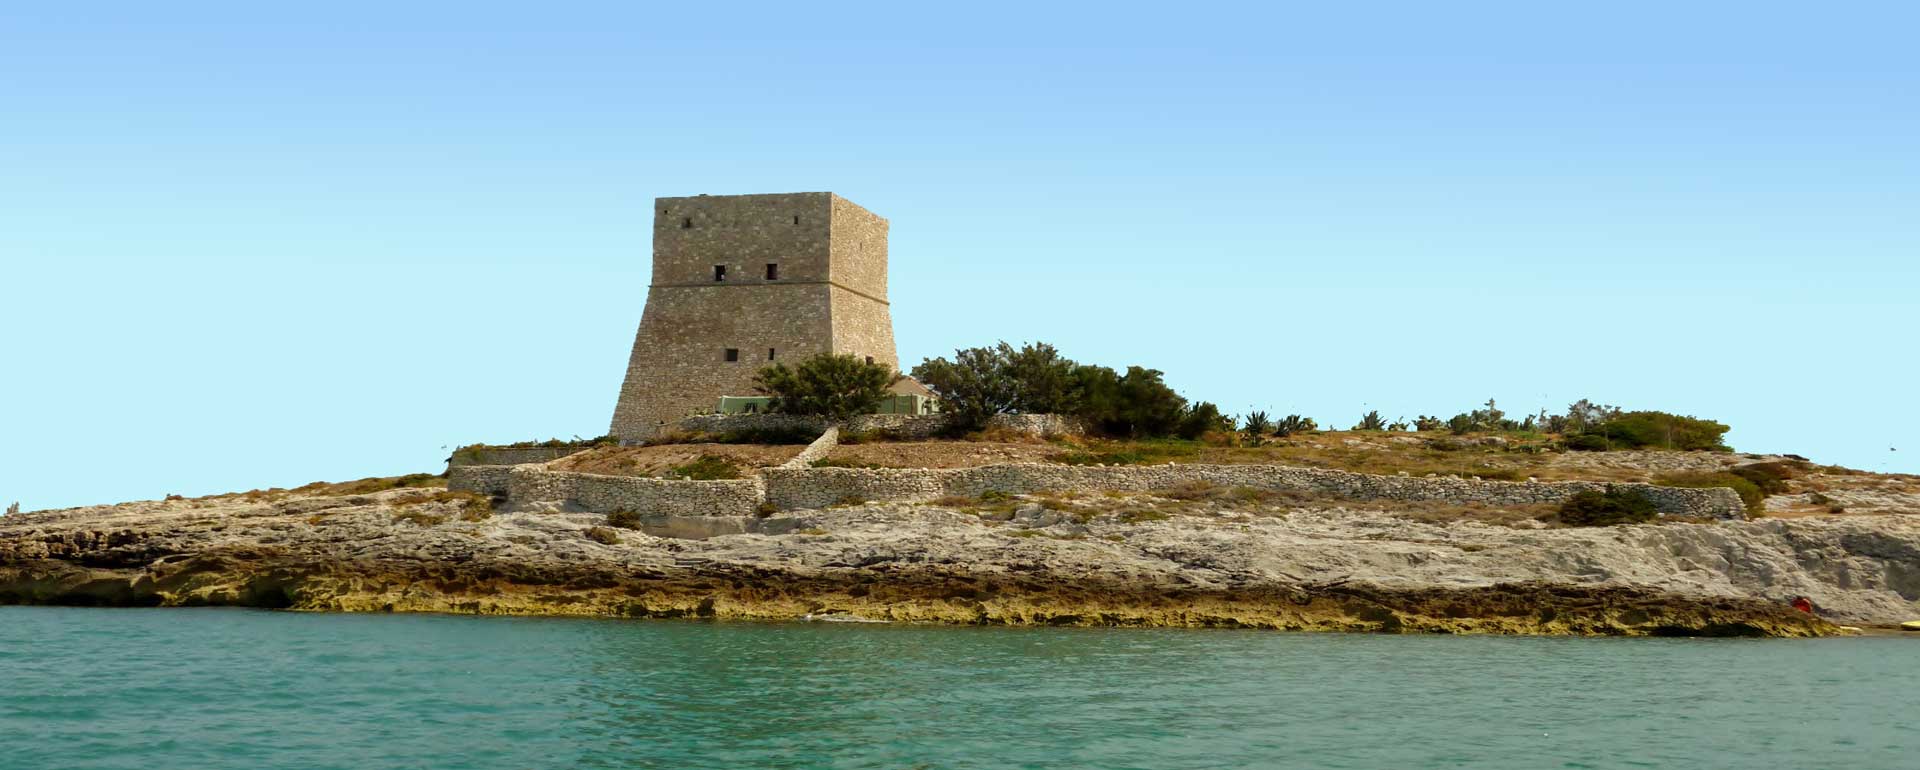 Torre costiera sul Gargano